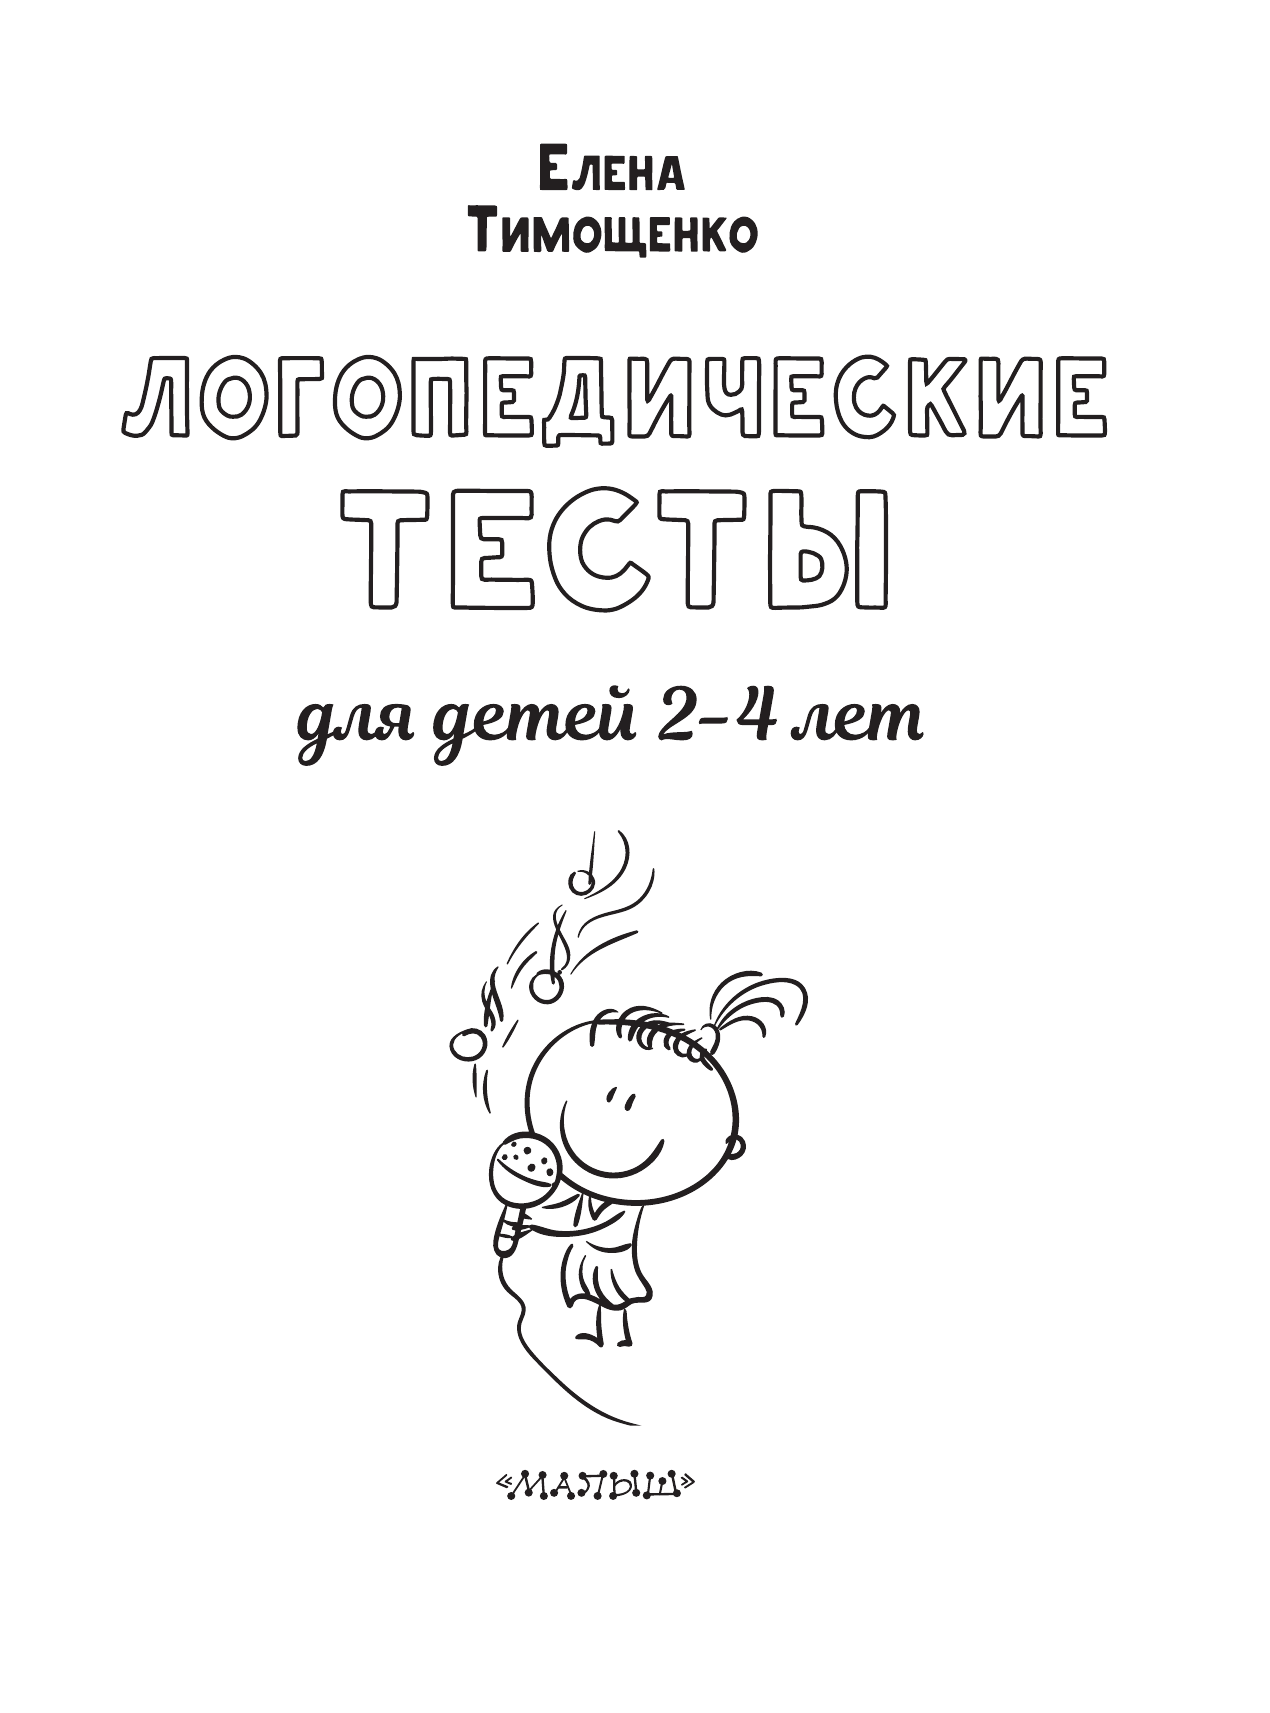 Тимощенко Елена Геннадьевна Логопедические тесты для детей 2-4 лет - страница 1